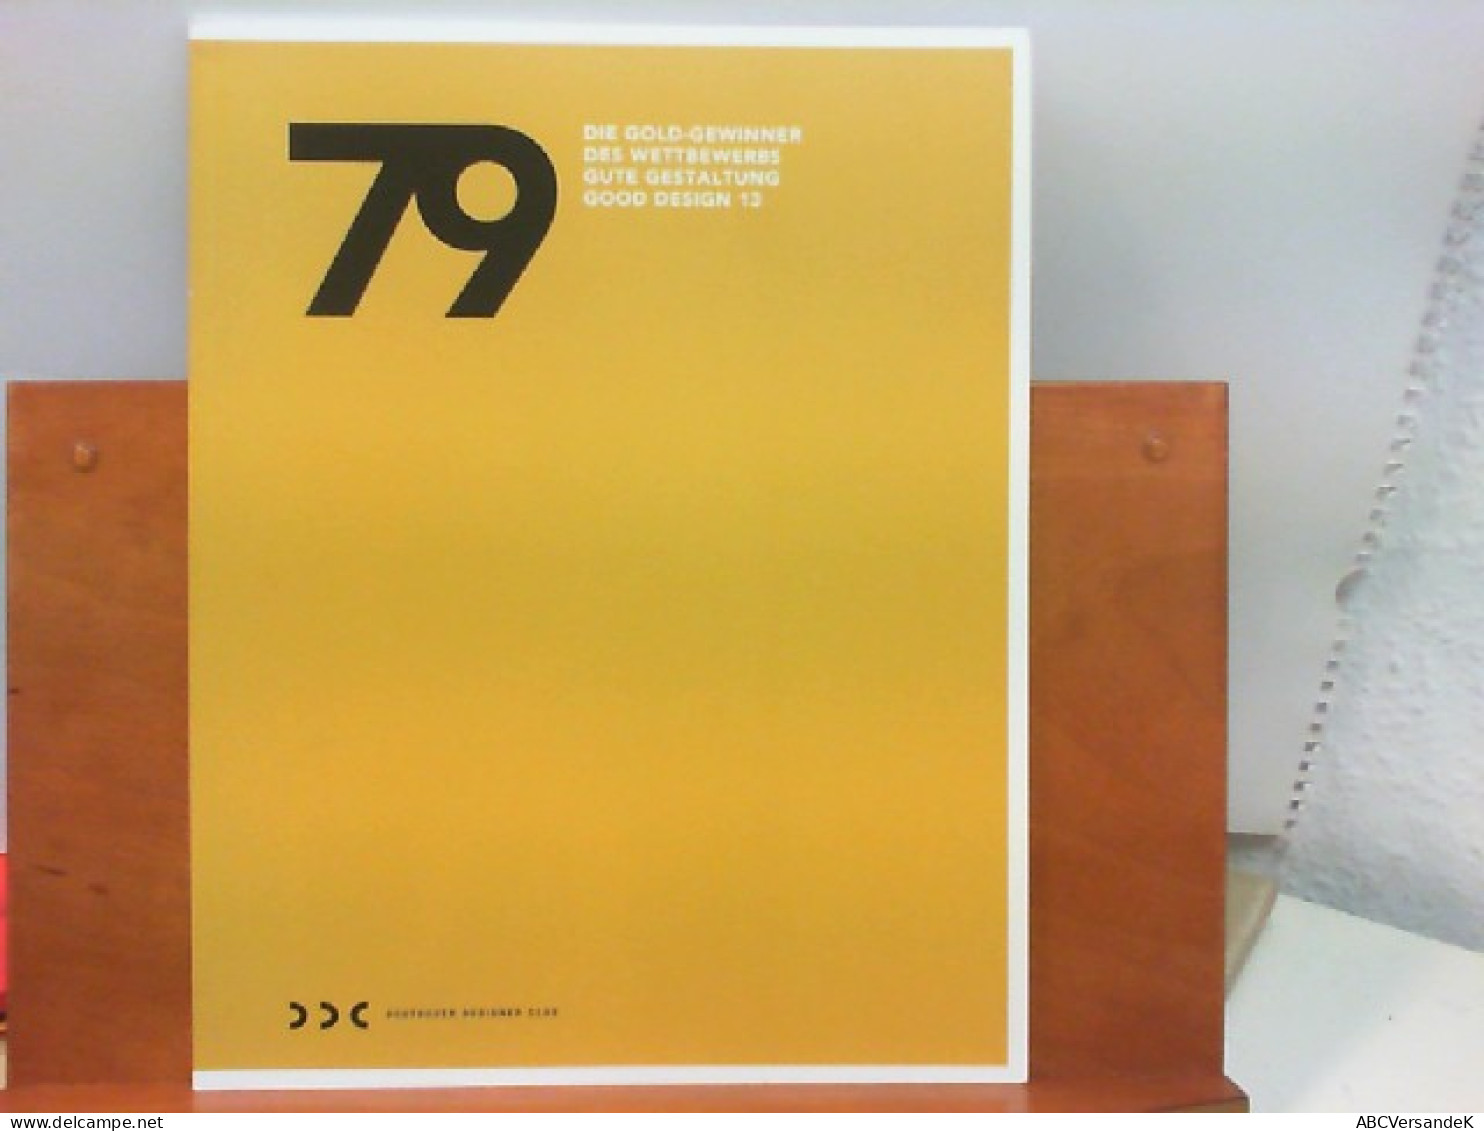 79 - Die Gold - Gewinner Des Wettbewerbs Gute Gestaltung Good Design 13 - Grafiek & Design